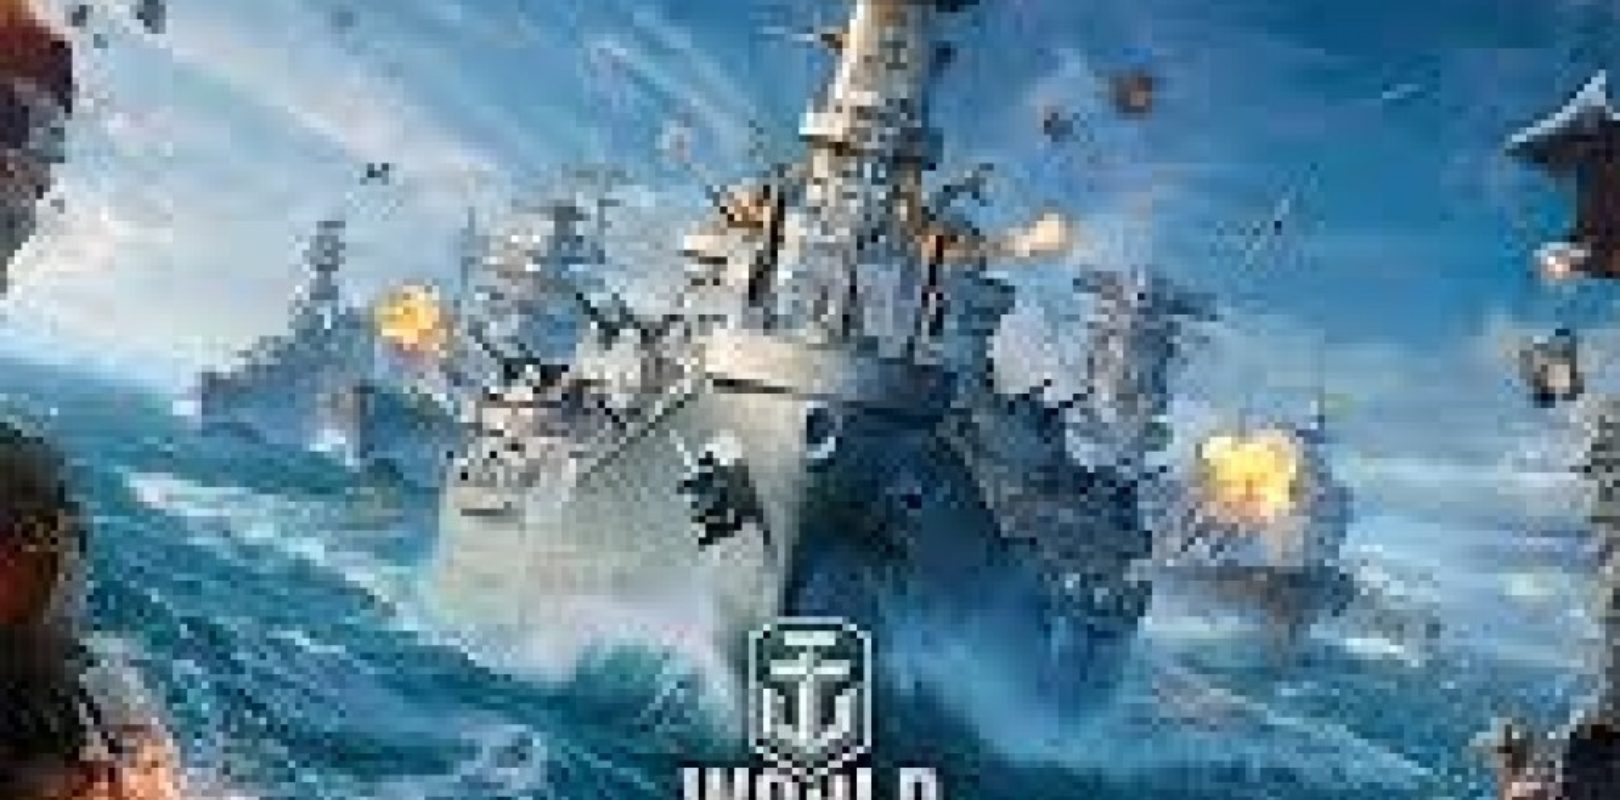 world of warships activate bonus code